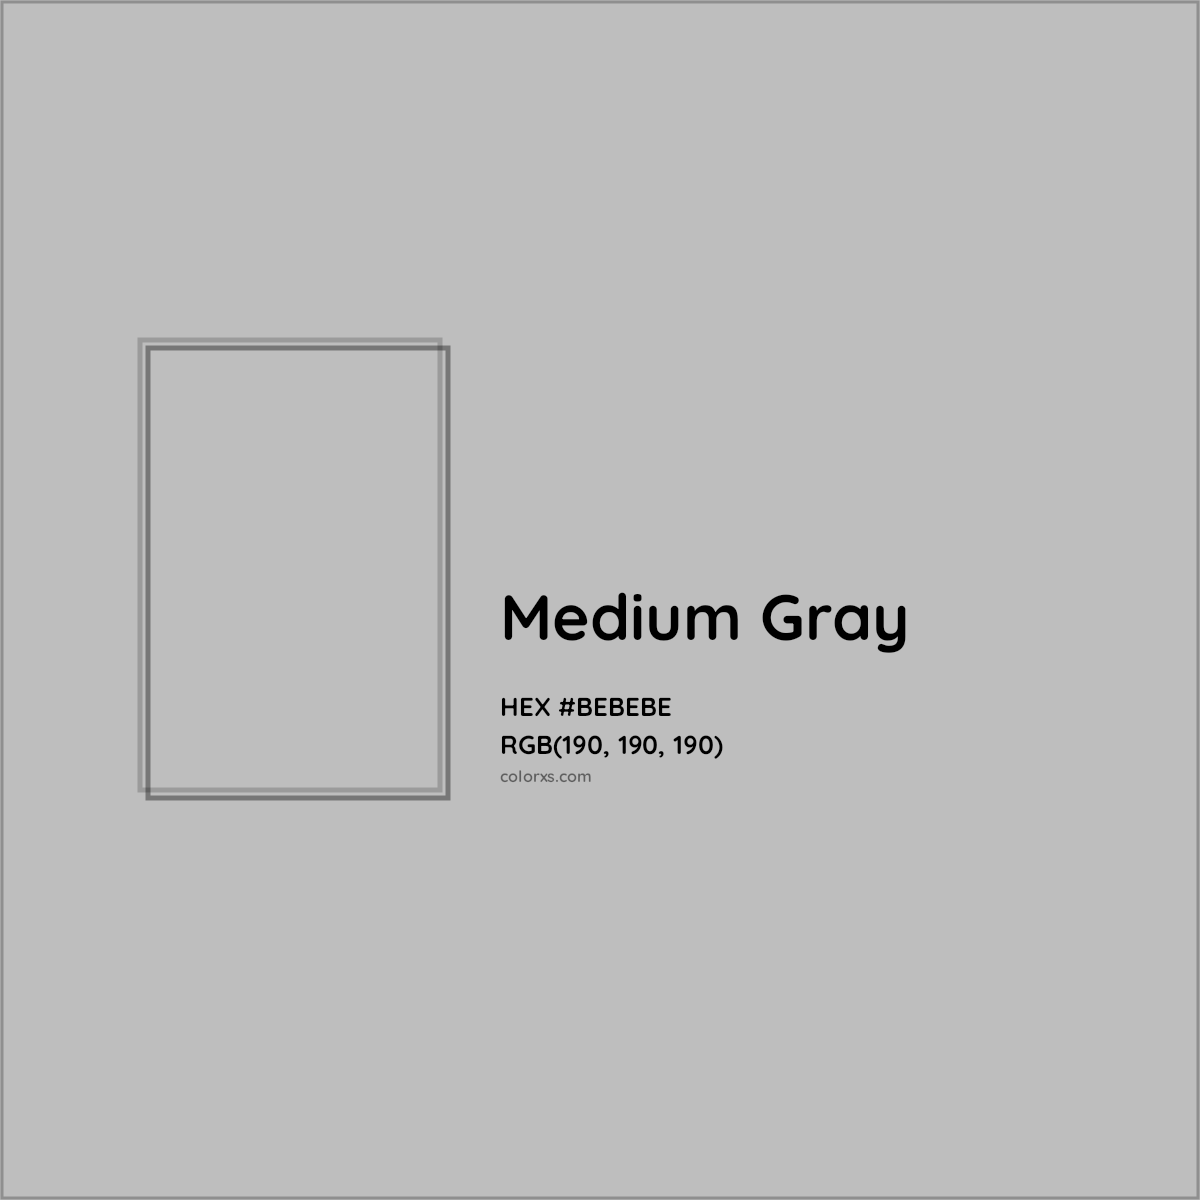 Medium Grey color hex code is #828282